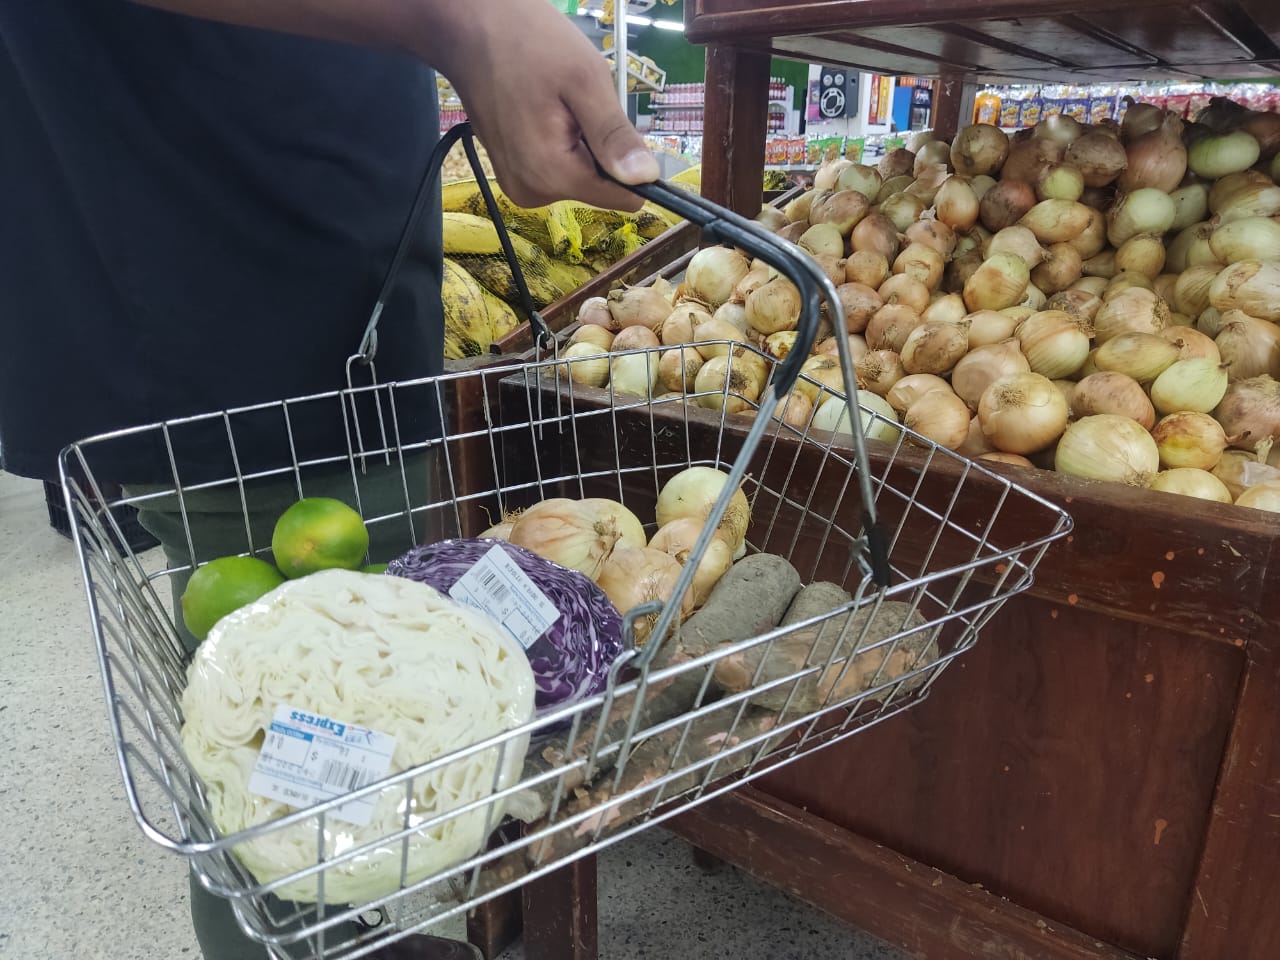 Frutas y verduras se venden a menos de $1 en el Express